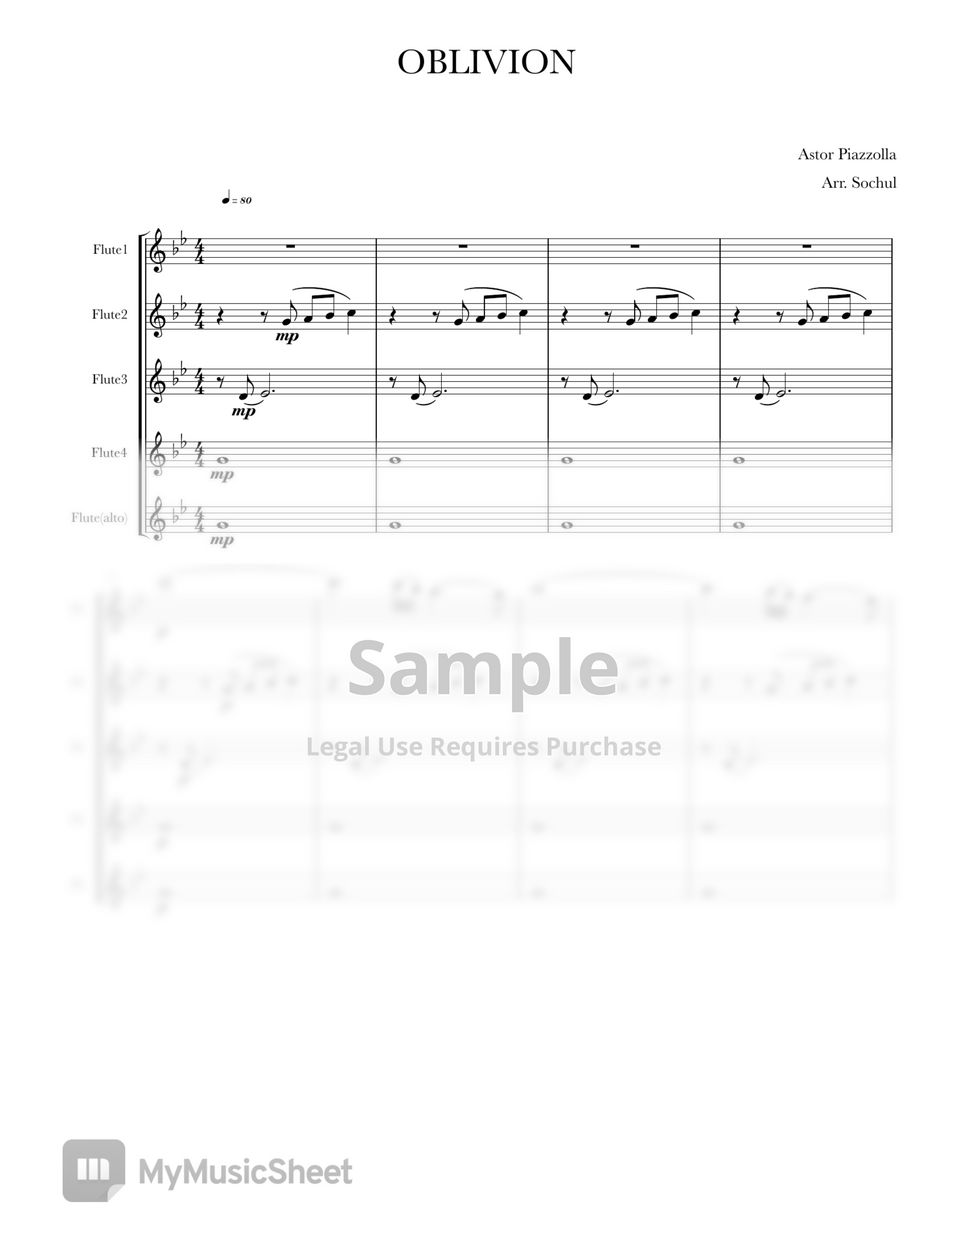 피아졸라 Astor Piazzolla - 망각 4중주 Oblivion (Flute ensemble) by Sochul